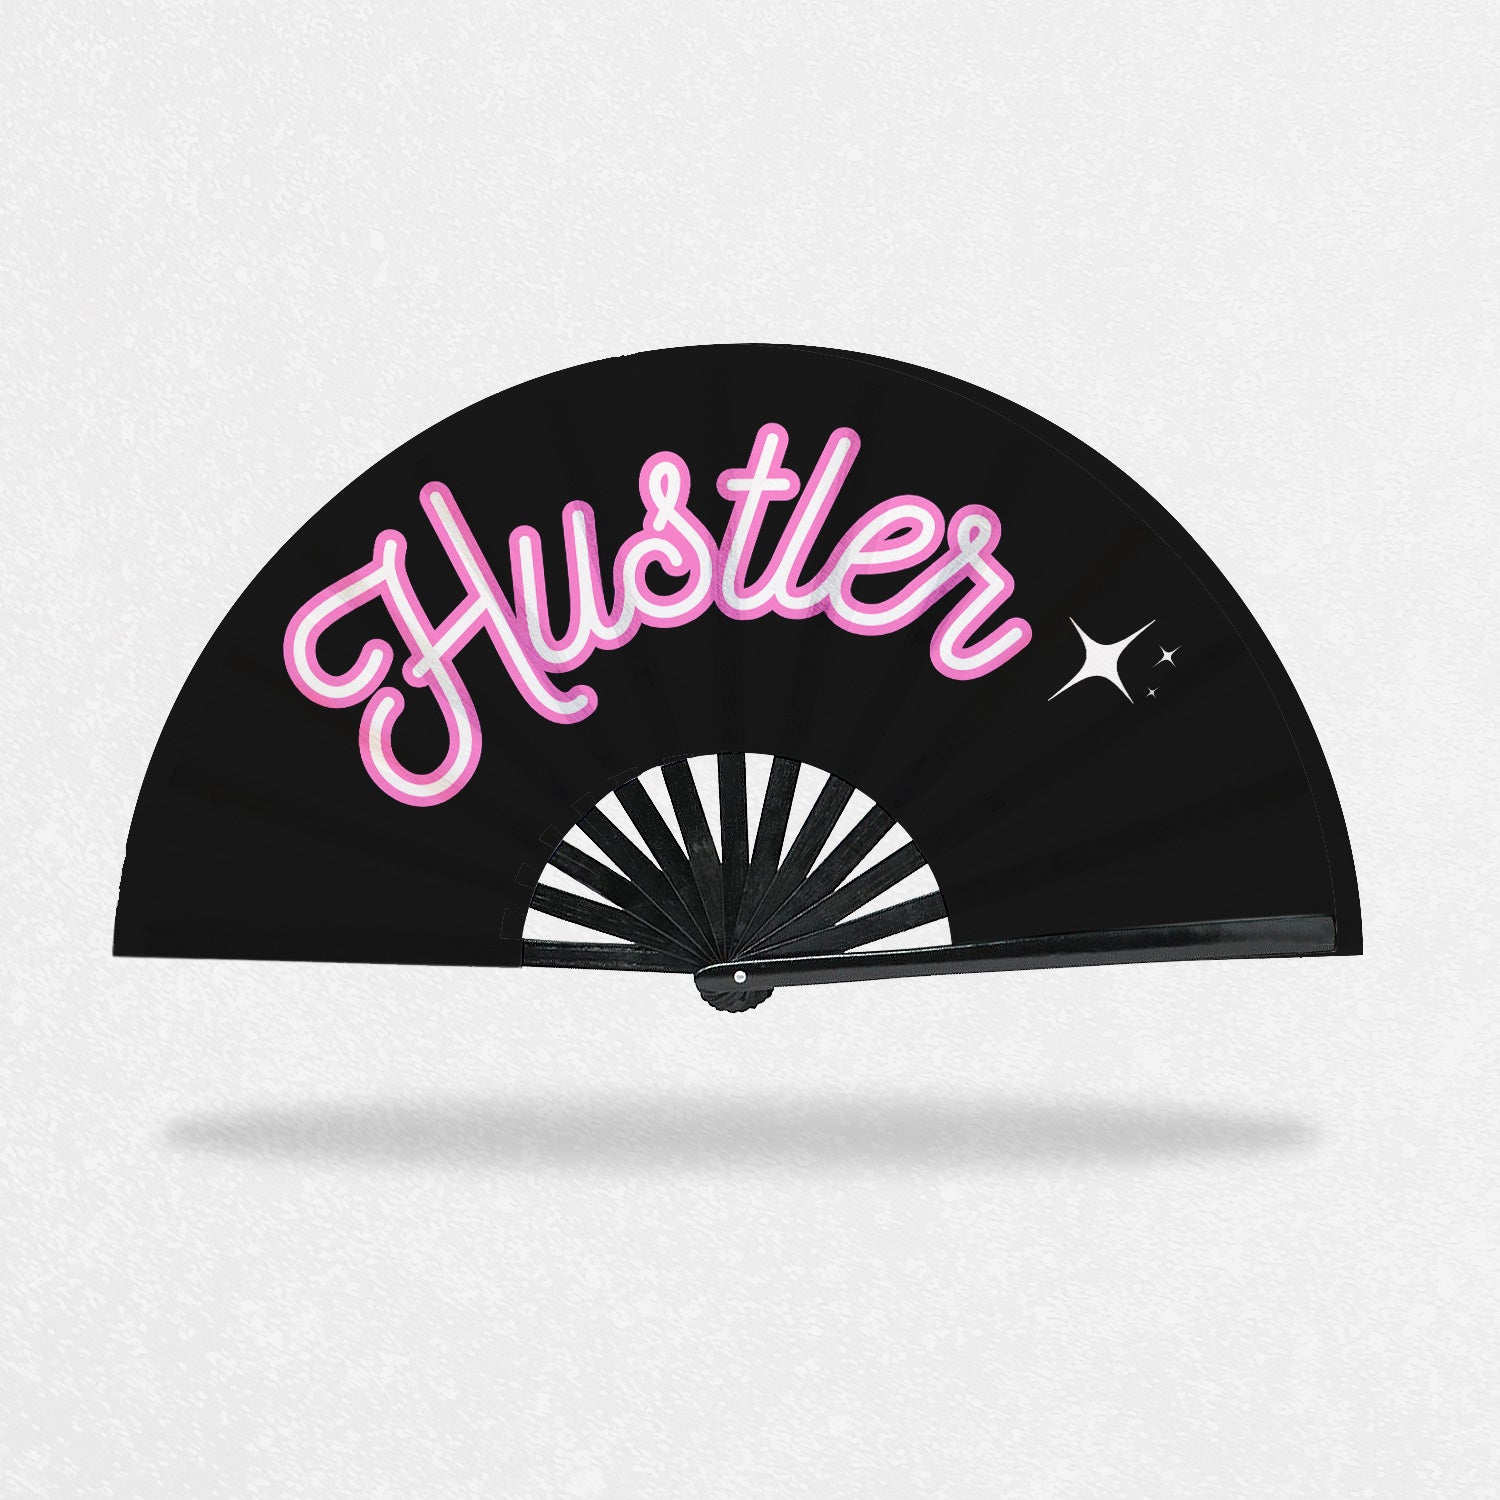 Jane Hustle - Hustler Clack Fan